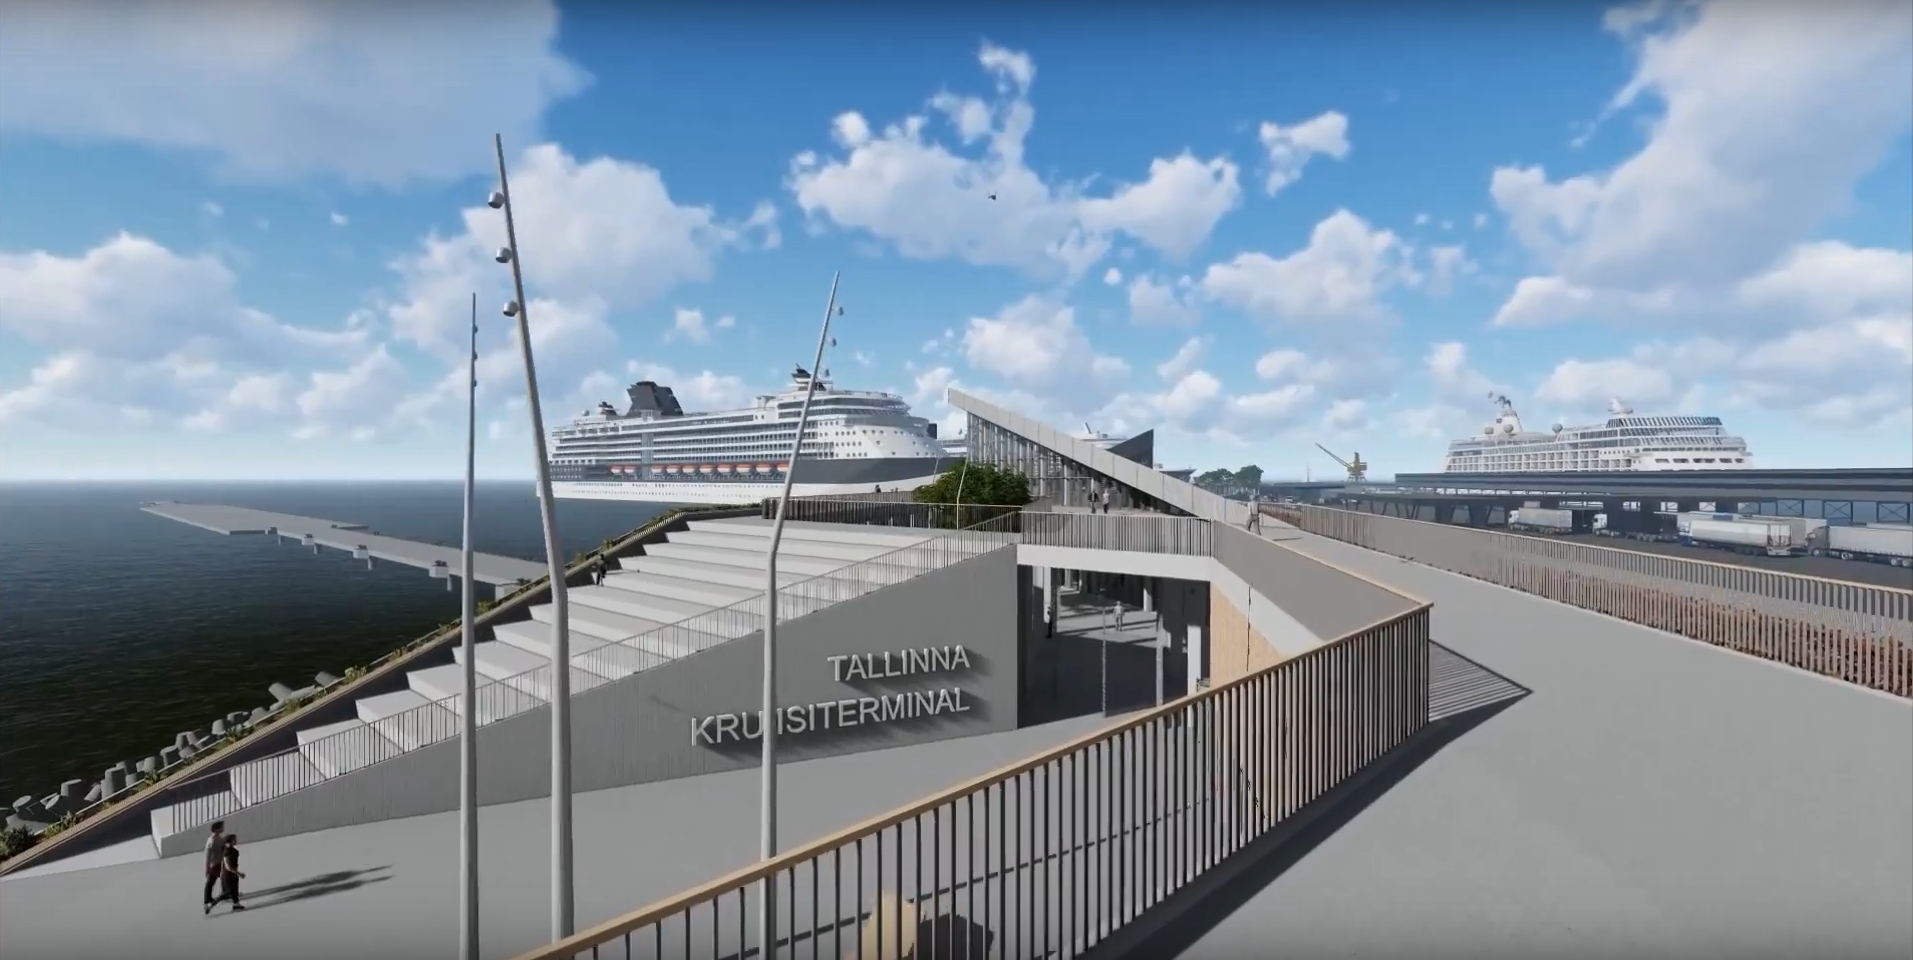 Tallinn to have a new cruise terminal